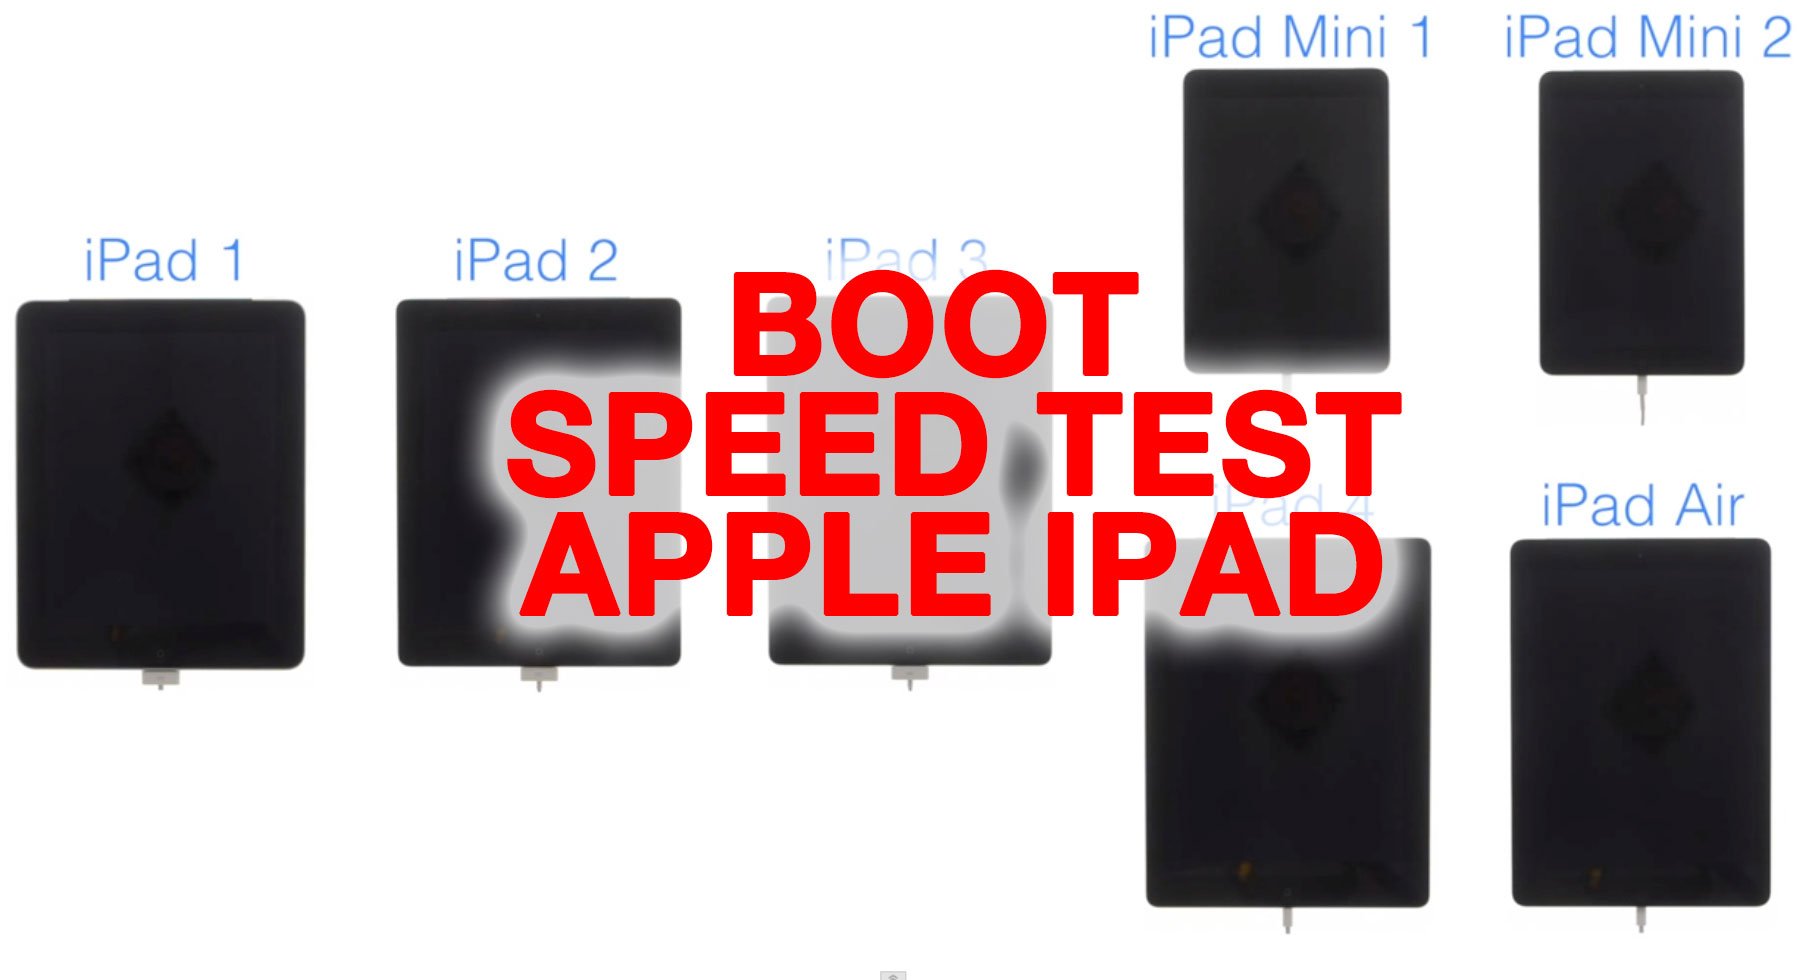 Video: Boot-Speed Test iPad Air vs. Retina iPad mini vs. iPad mini vs. iPad 4, iPad 3, iPad 2 vs. iPad 1 2